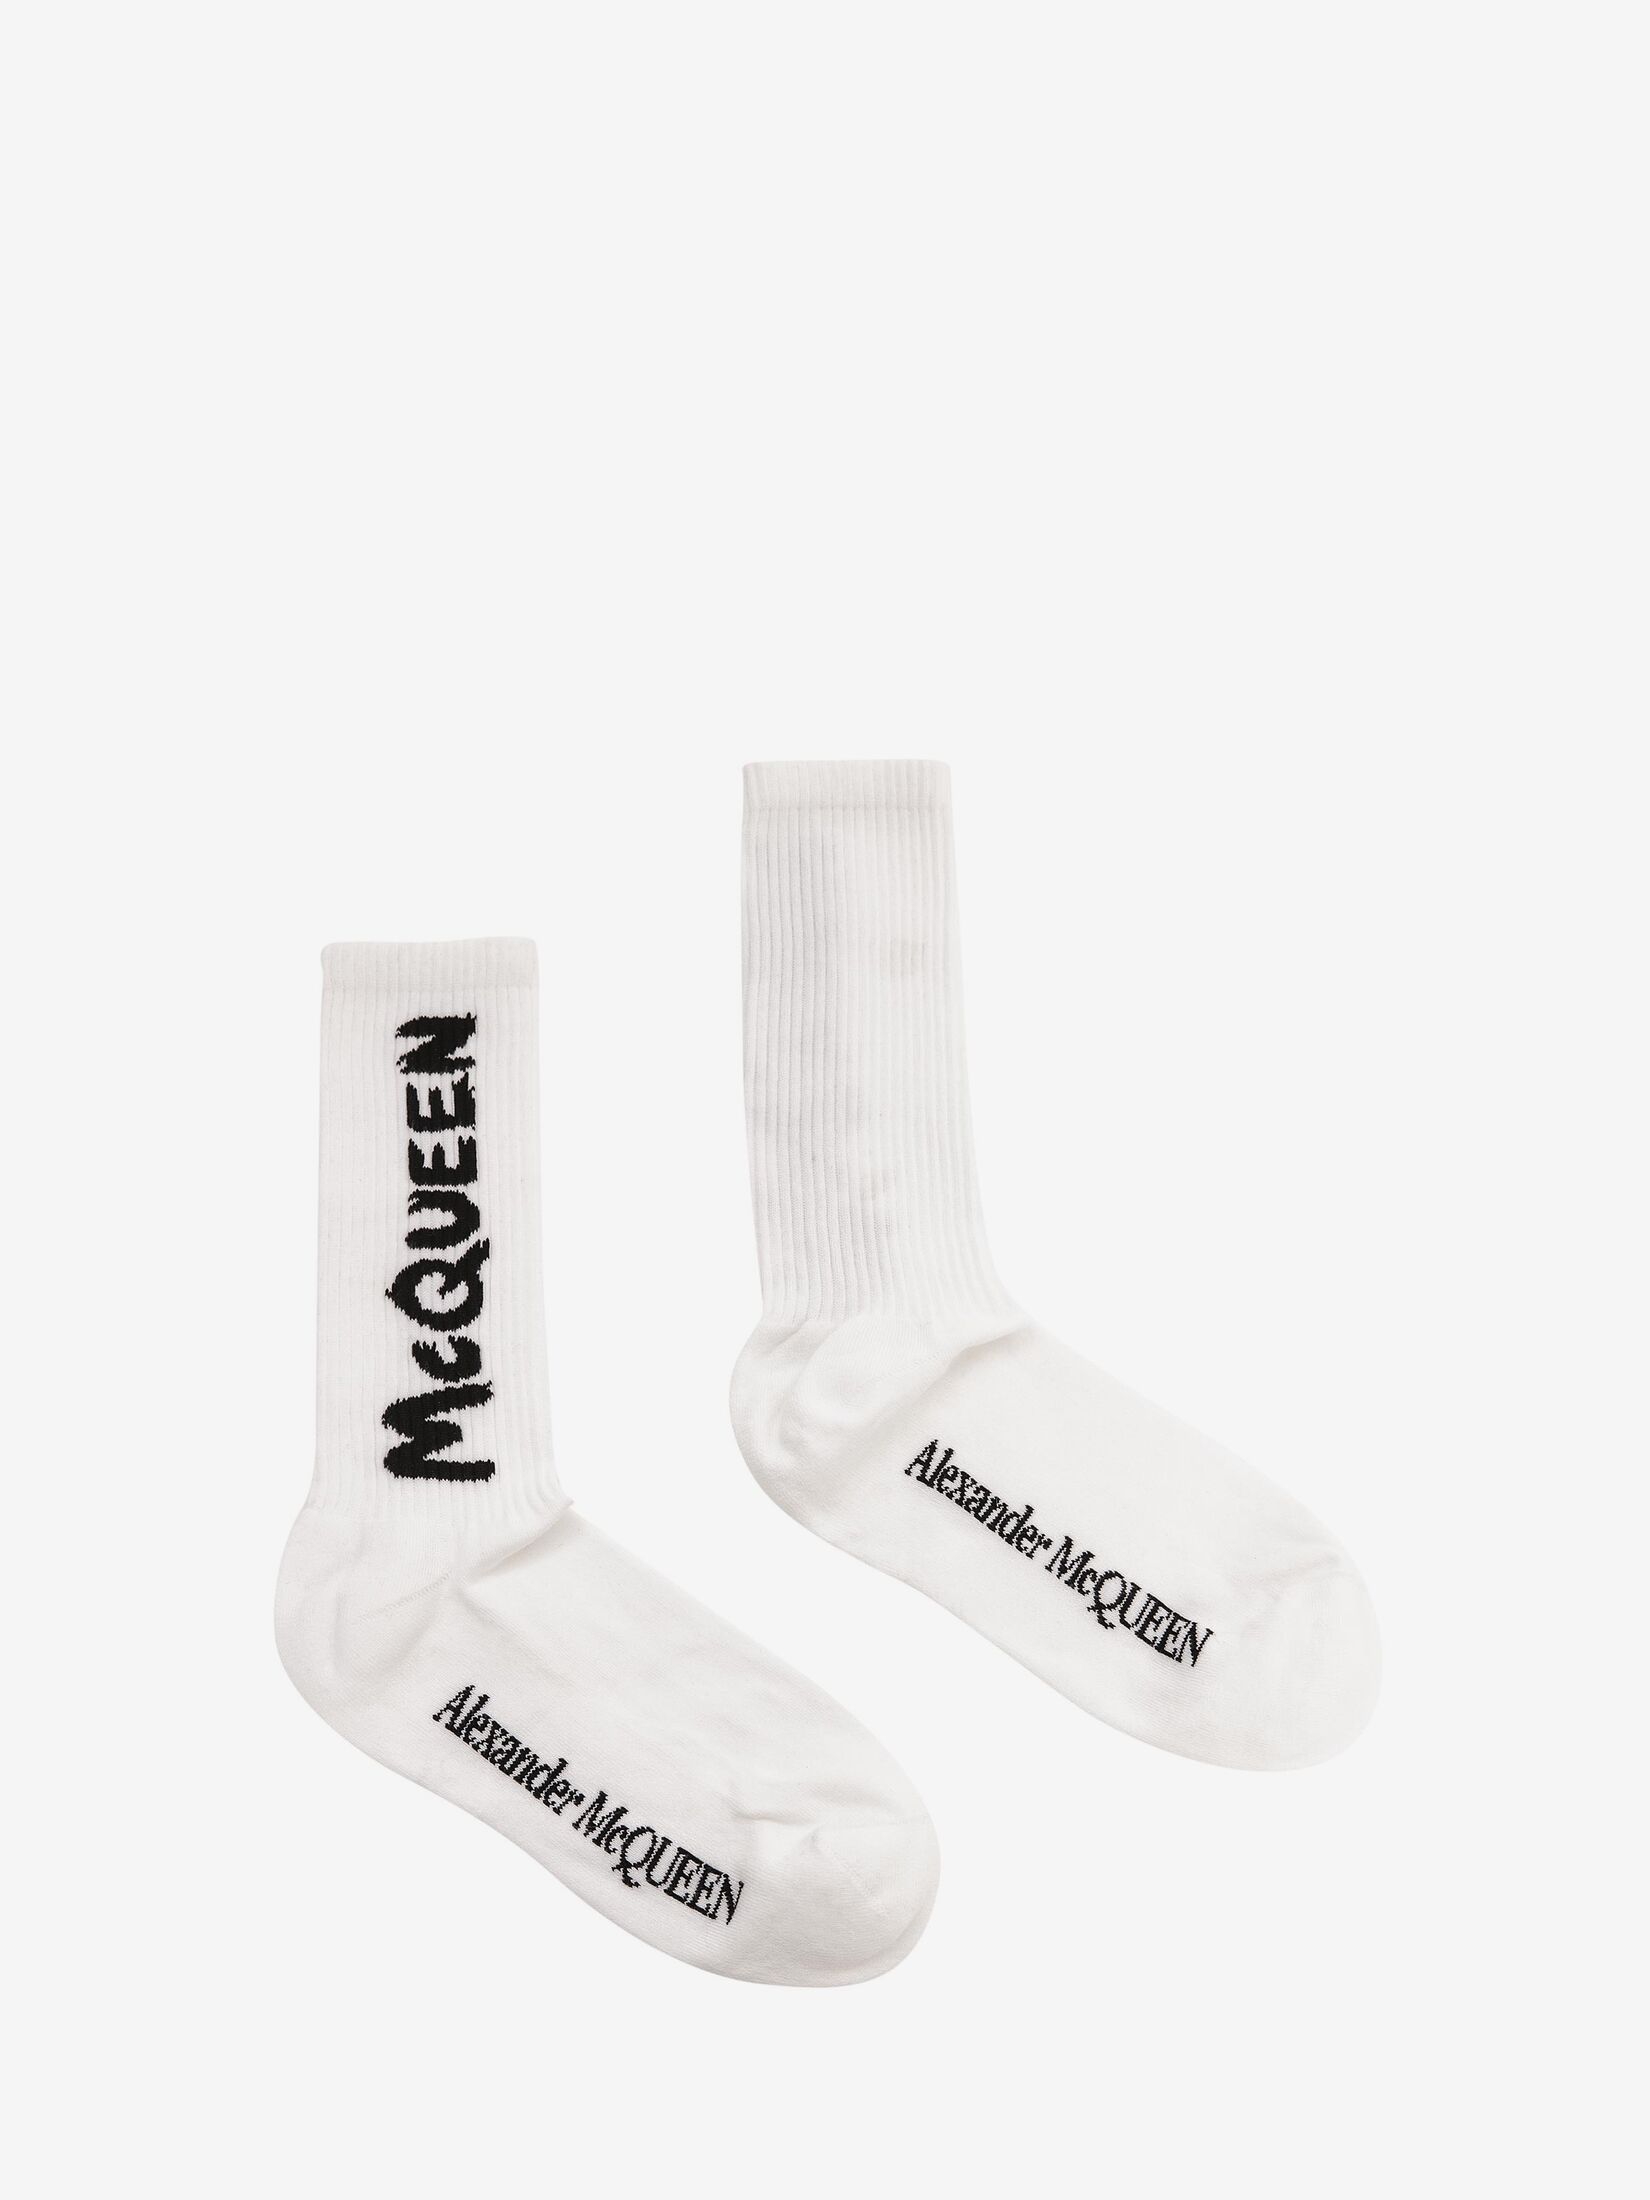 McQueen Graffiti短袜